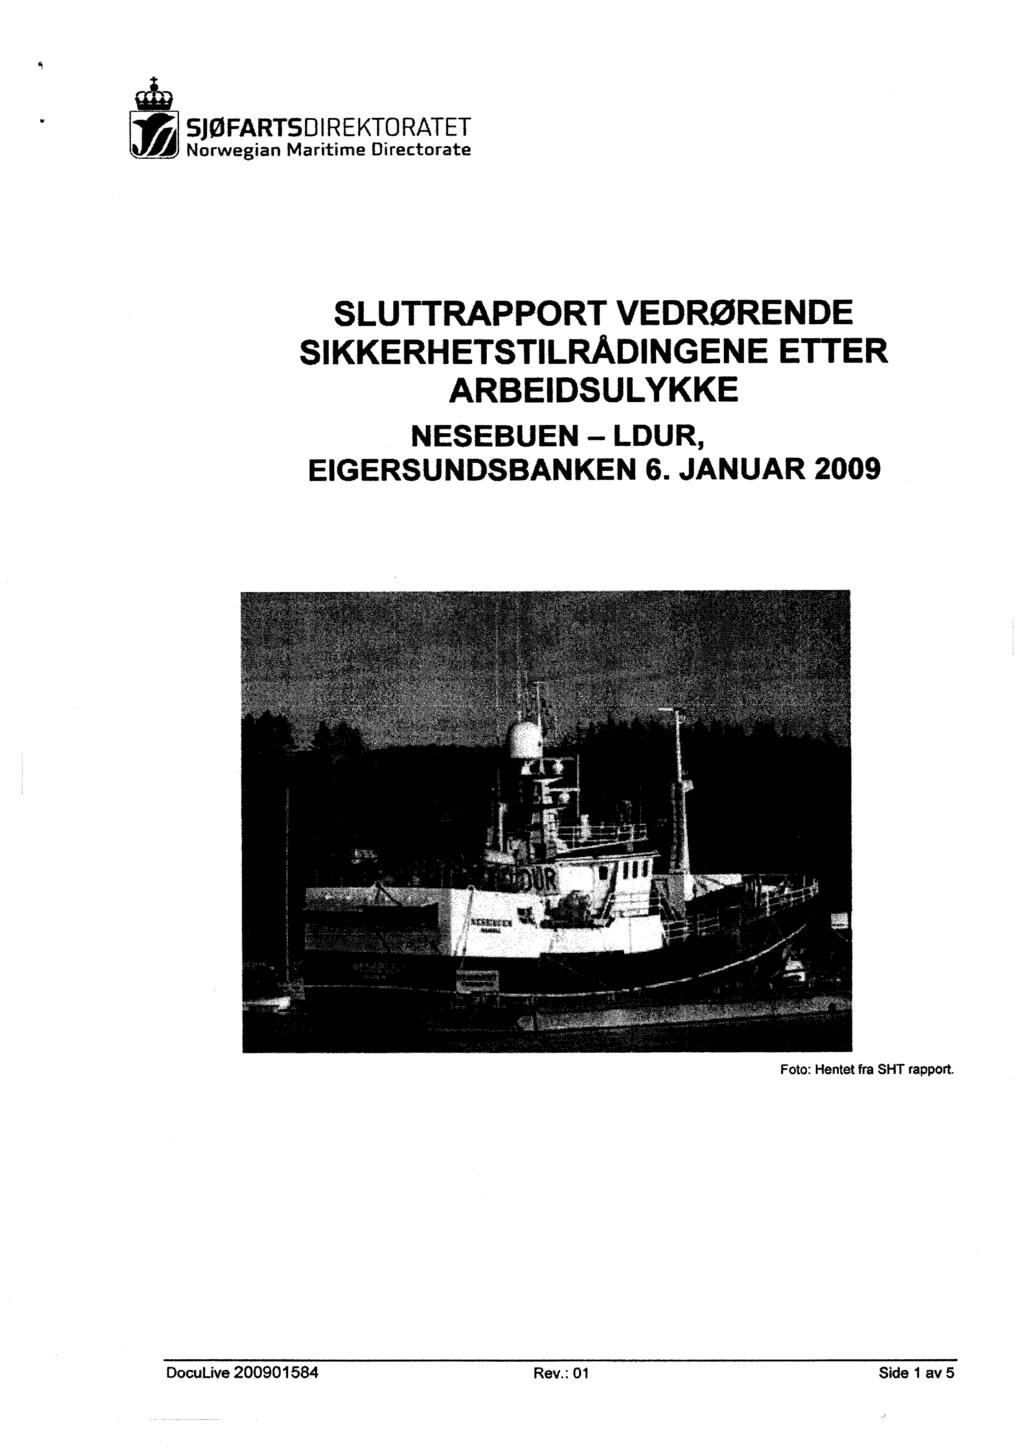 'i SIØFARTSDIREKTORATET Å Norwegian Maritime Directorate: SLUTTRAPPORT VEDRØRENDE SIKKERHETSTILRÅDINGENE ETTER